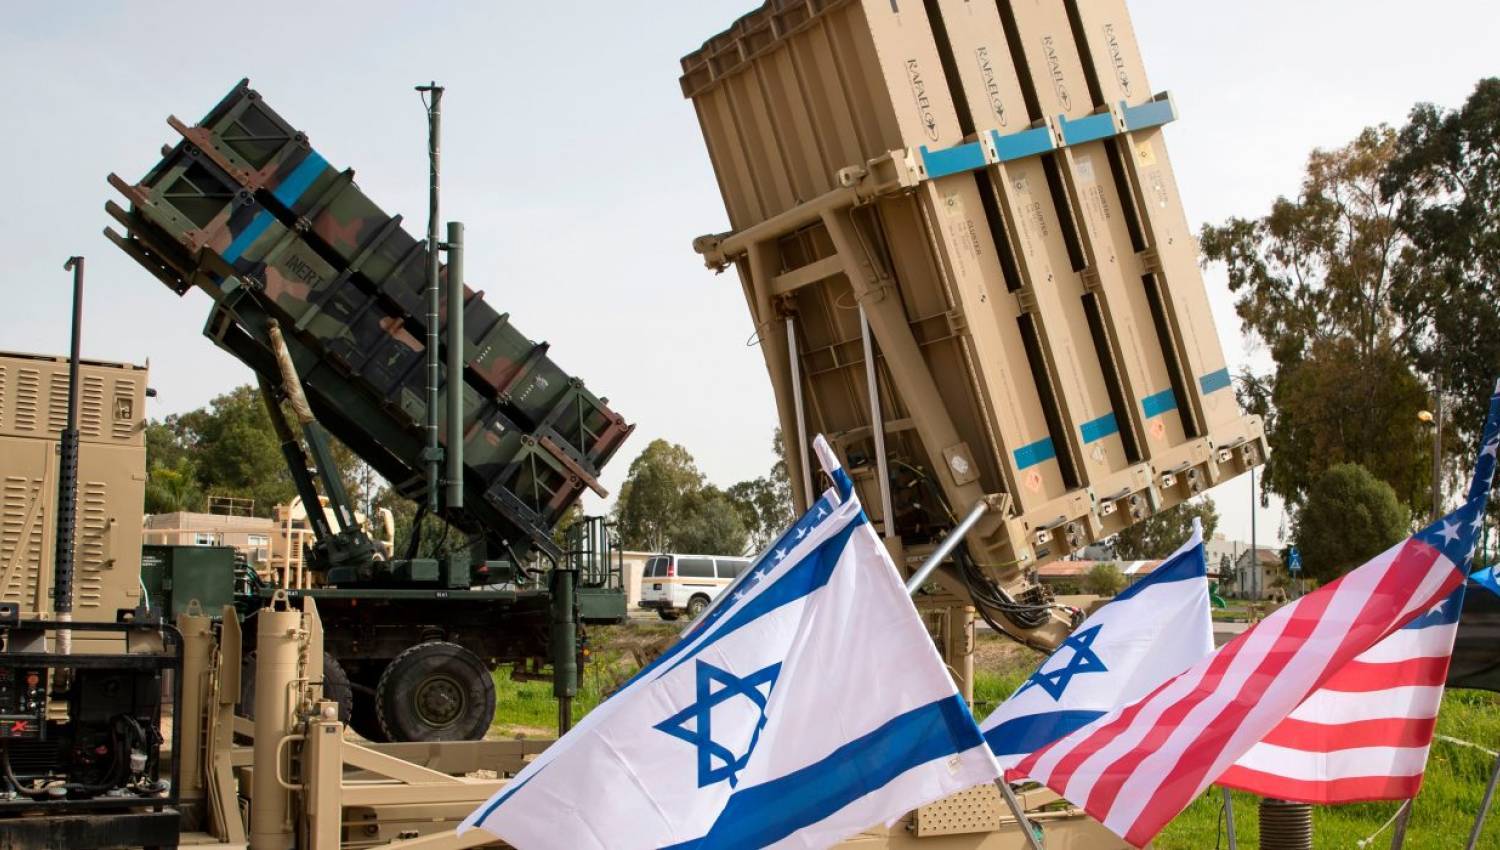 וושינגטון מודאגת מהנשורת: דיון על הגבלת התמיכה הצבאית לישראל